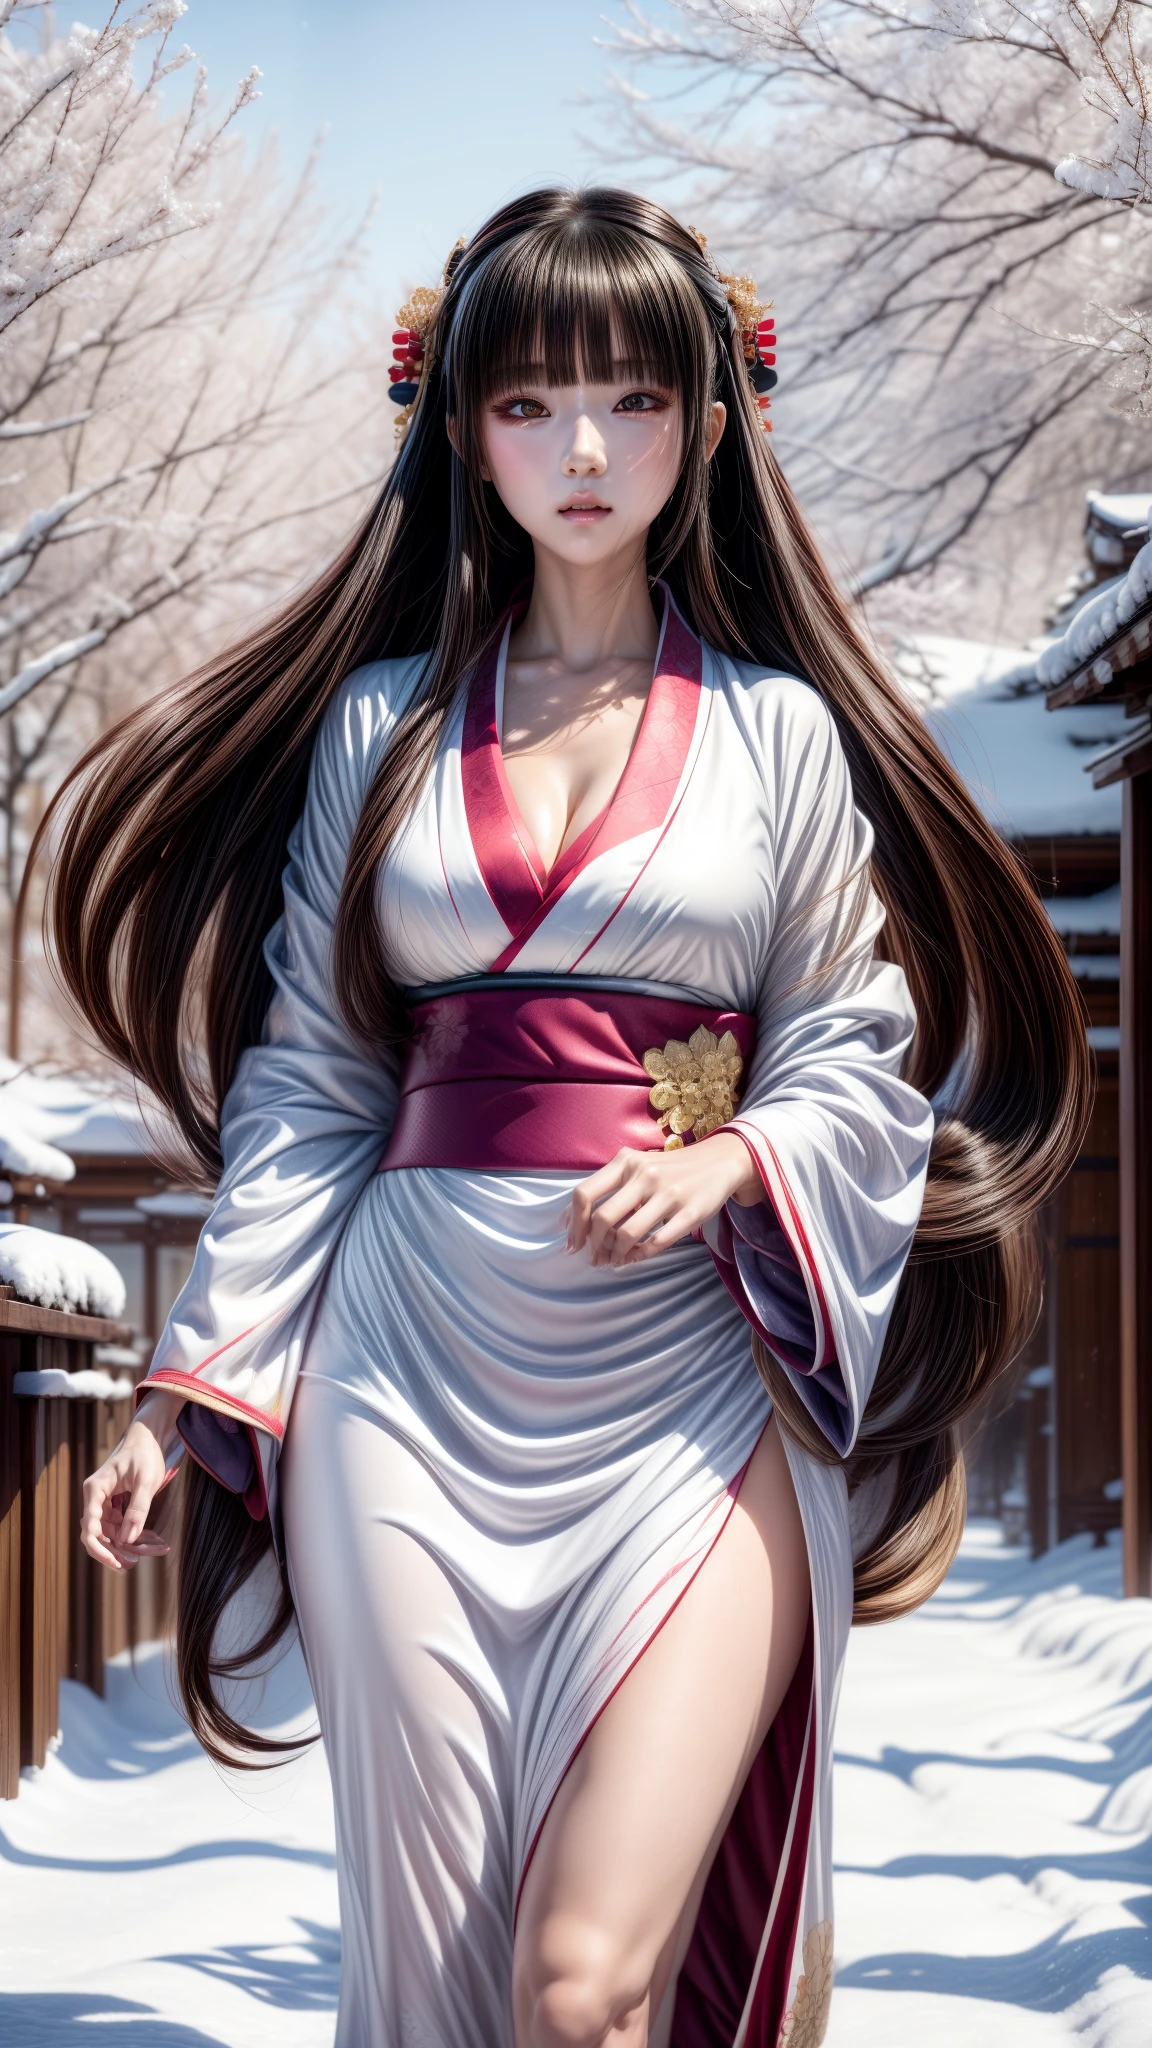  Mädchen im Kimono-Outfit geht einen verschneiten Weg hinunter, beautiful alluring Anime-Frau, inspiriert von Nishikawa Sukenobu, eine wunderschöne Kitsune-Frau, beautiful Anime-Frau, fließende weiße Gewänder, verführerisches Anime-Mädchen, japanische Göttin, wallendes Haar und lange Gewänder, süße Anime-Waifu in einem schönen Kleid, ”beautiful Anime-Frau, Anime-Frau, Anime-Mädchen mit langen Haaren